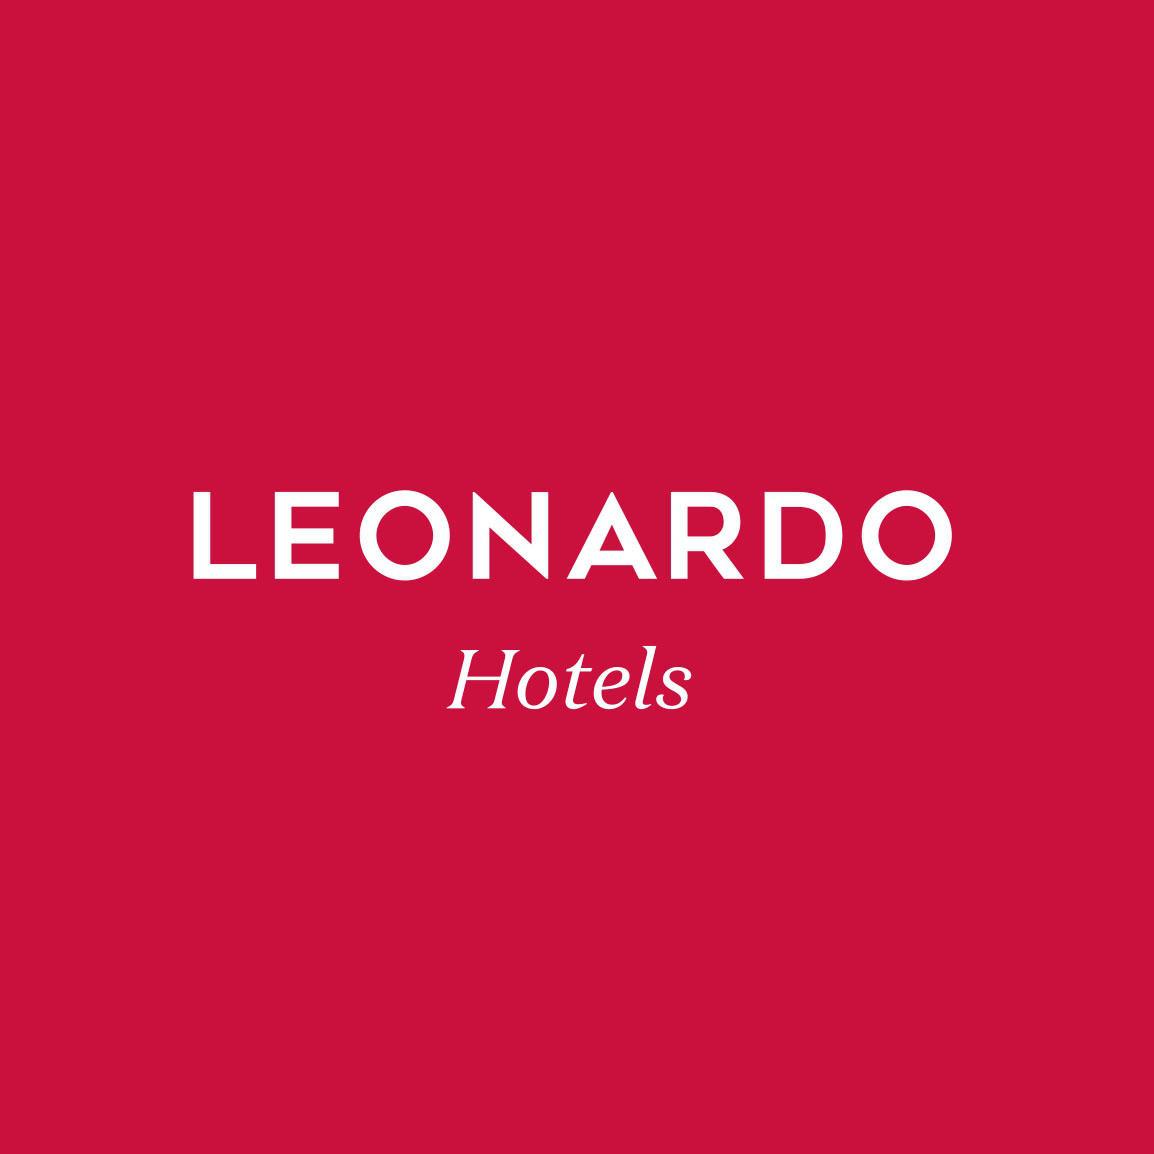 Leonardo Hotel Leeds - Leeds, West Yorkshire LS10 1NE - 01132 838800 | ShowMeLocal.com